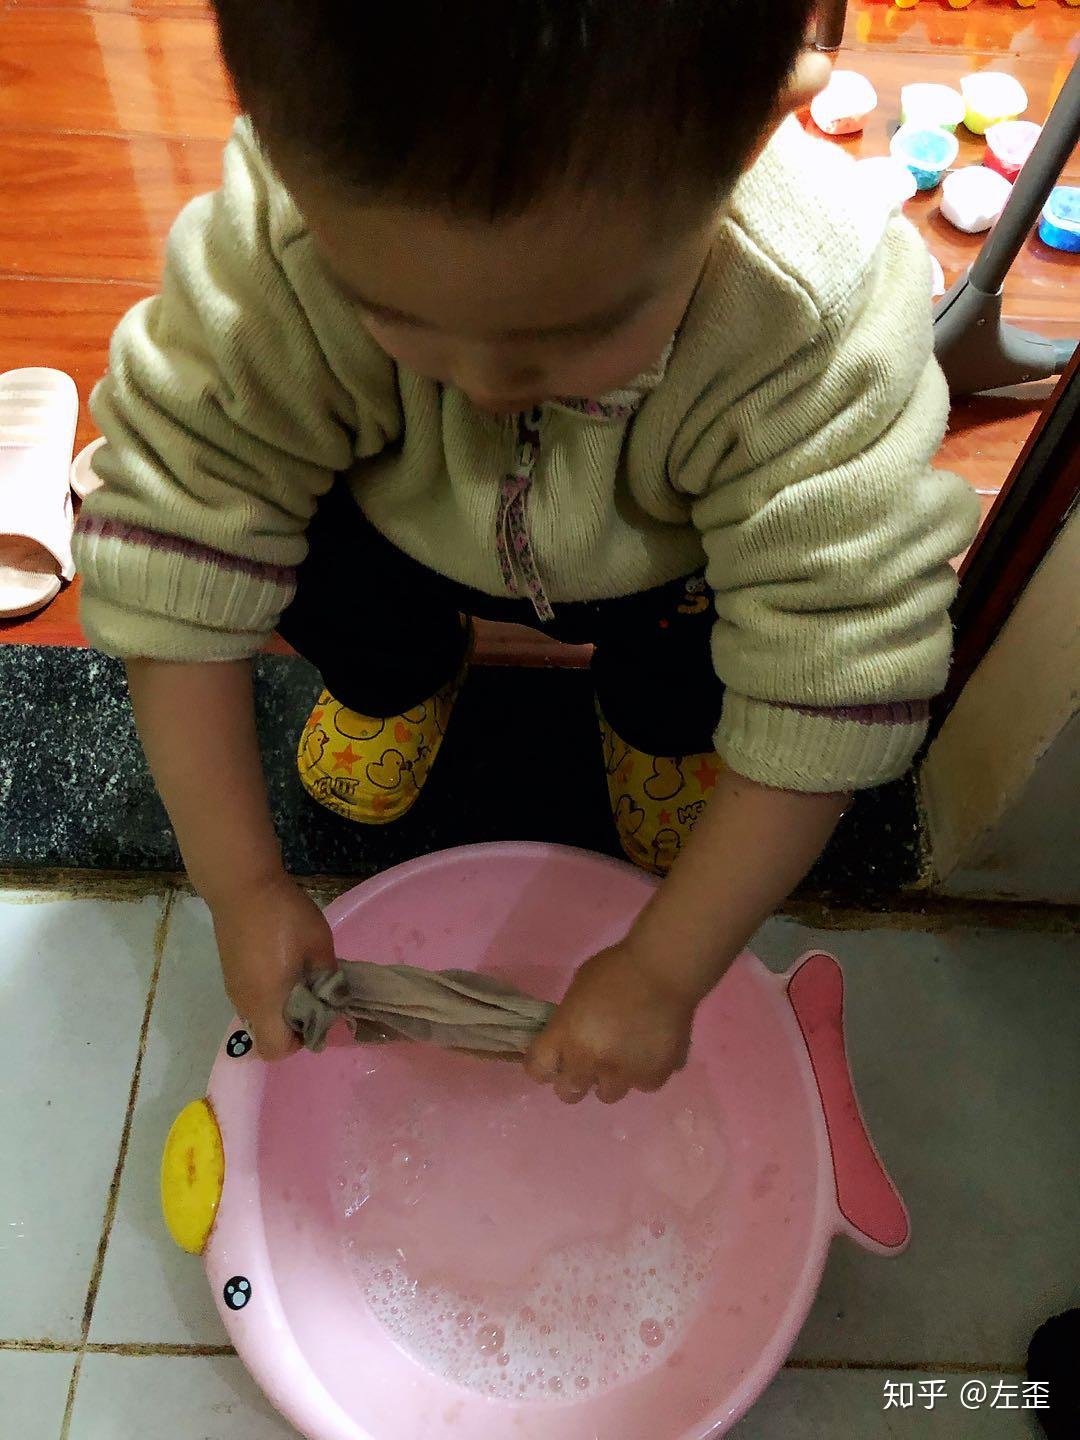 可爱的小女孩在厨房切胡萝卜。帮助孩子做家务的概念照片摄影图片_ID:337566576-Veer图库